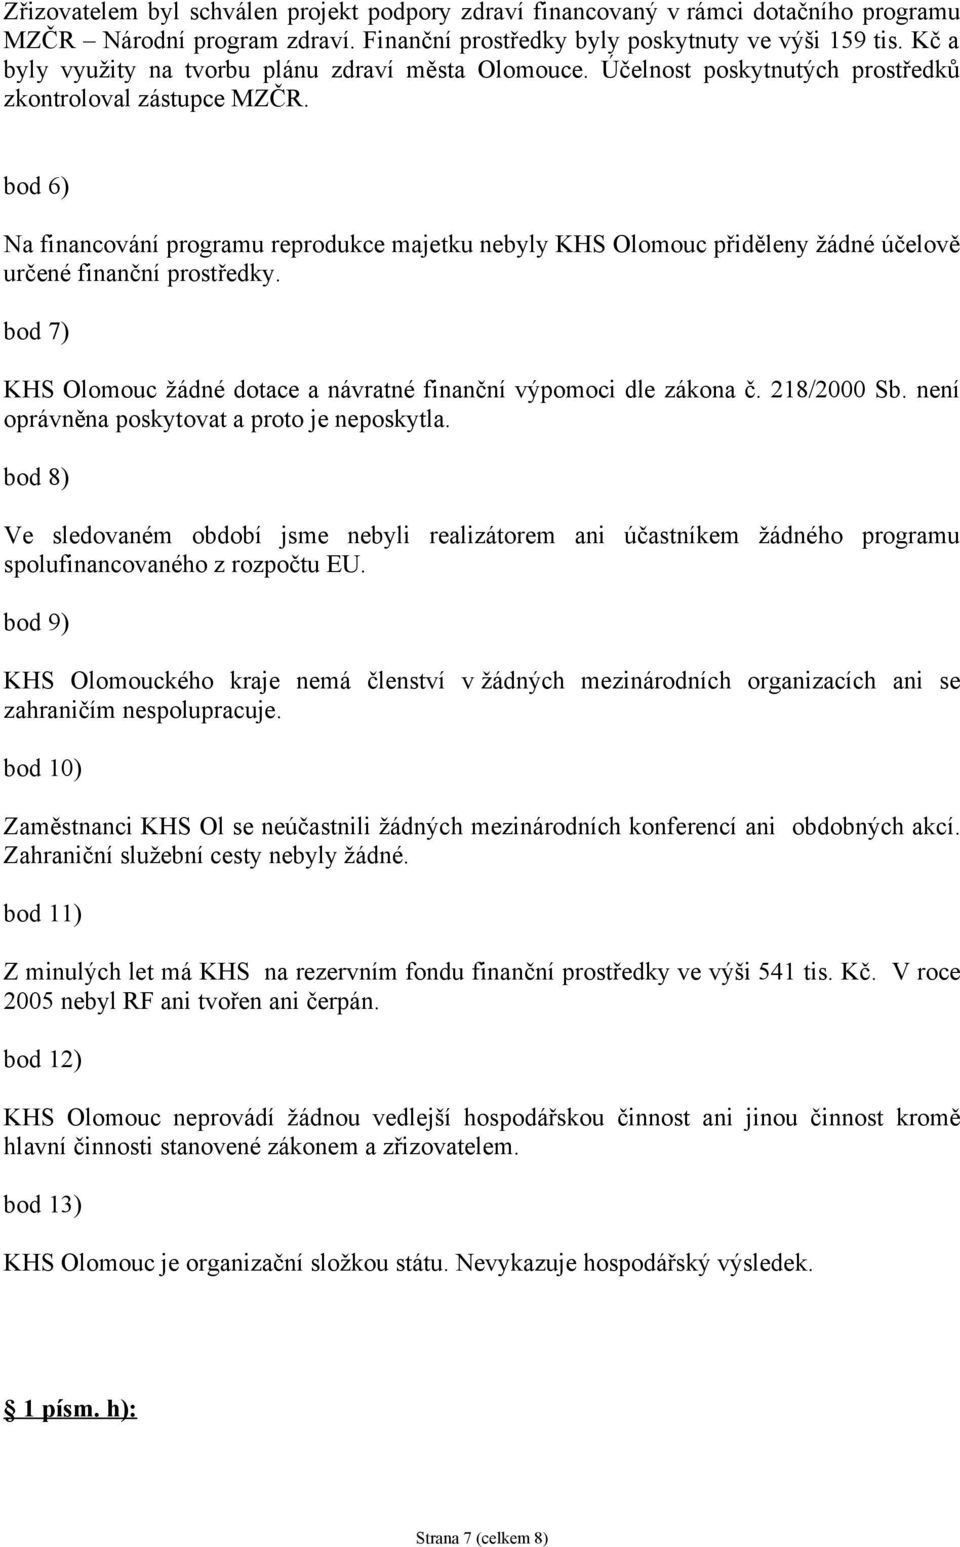 bod 6) Na financování programu reprodukce majetku nebyly KHS Olomouc přiděleny žádné účelově určené finanční prostředky. bod 7) KHS Olomouc žádné dotace a návratné finanční výpomoci dle zákona č.